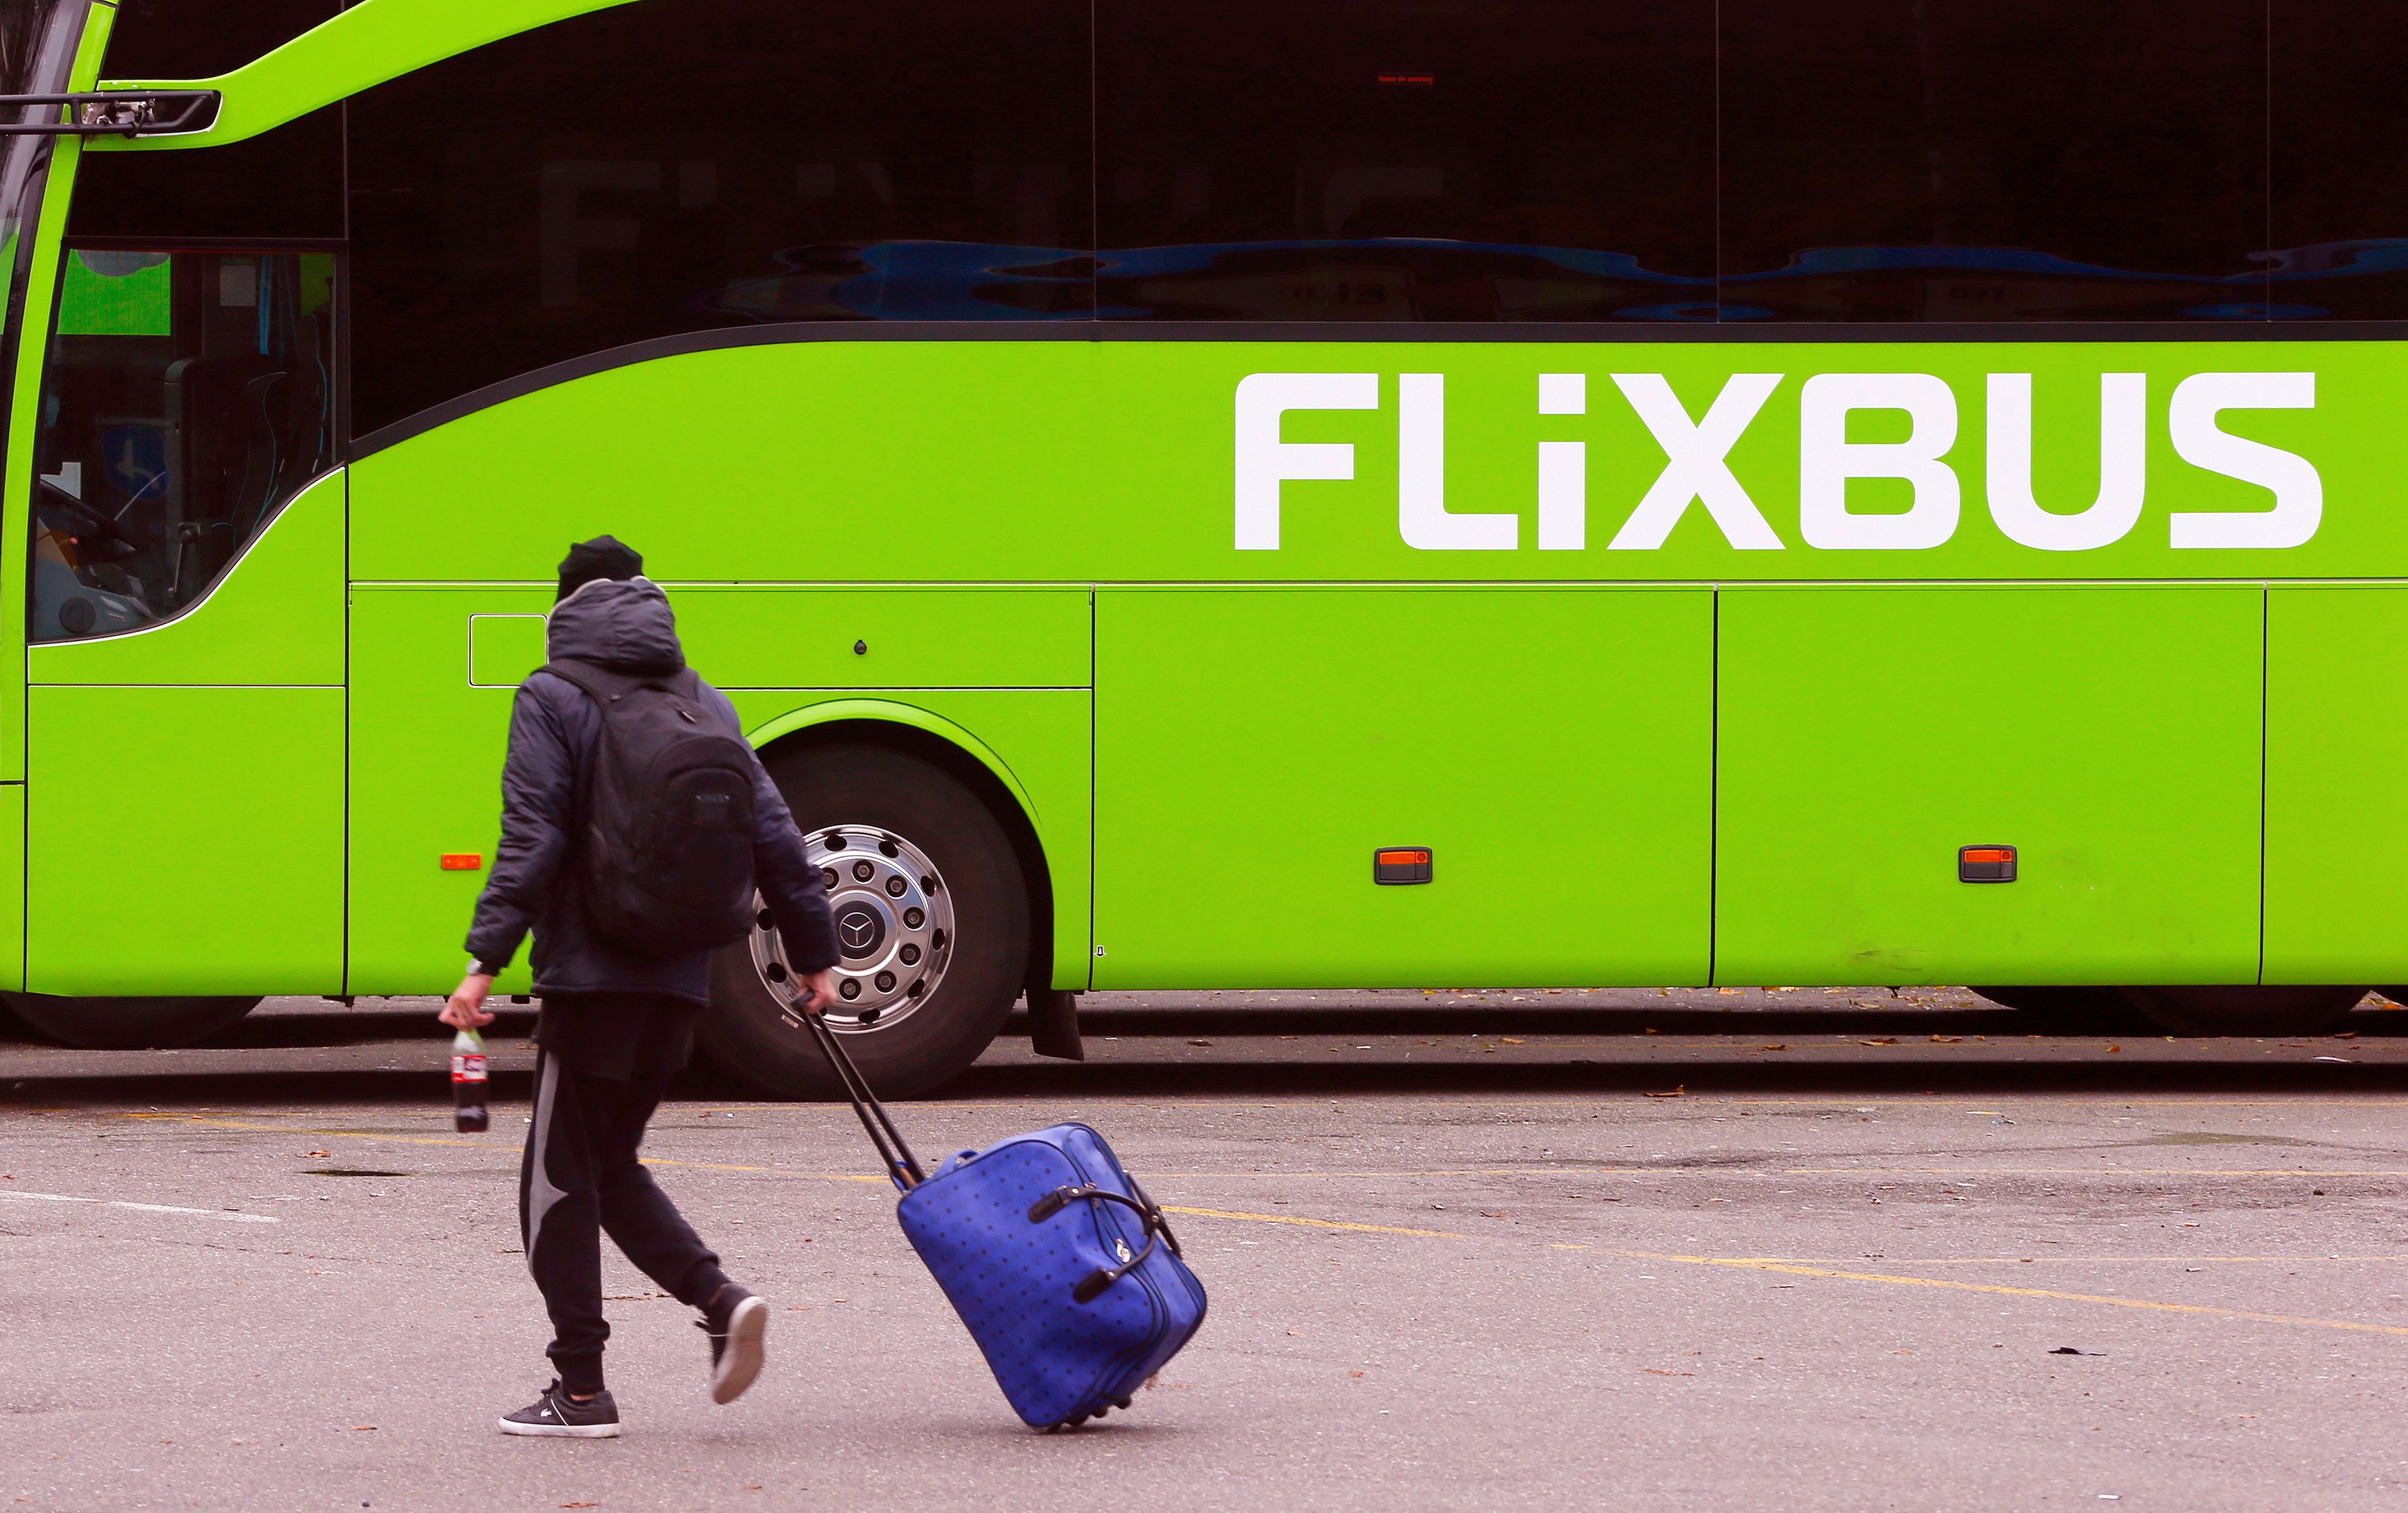 FlixBus